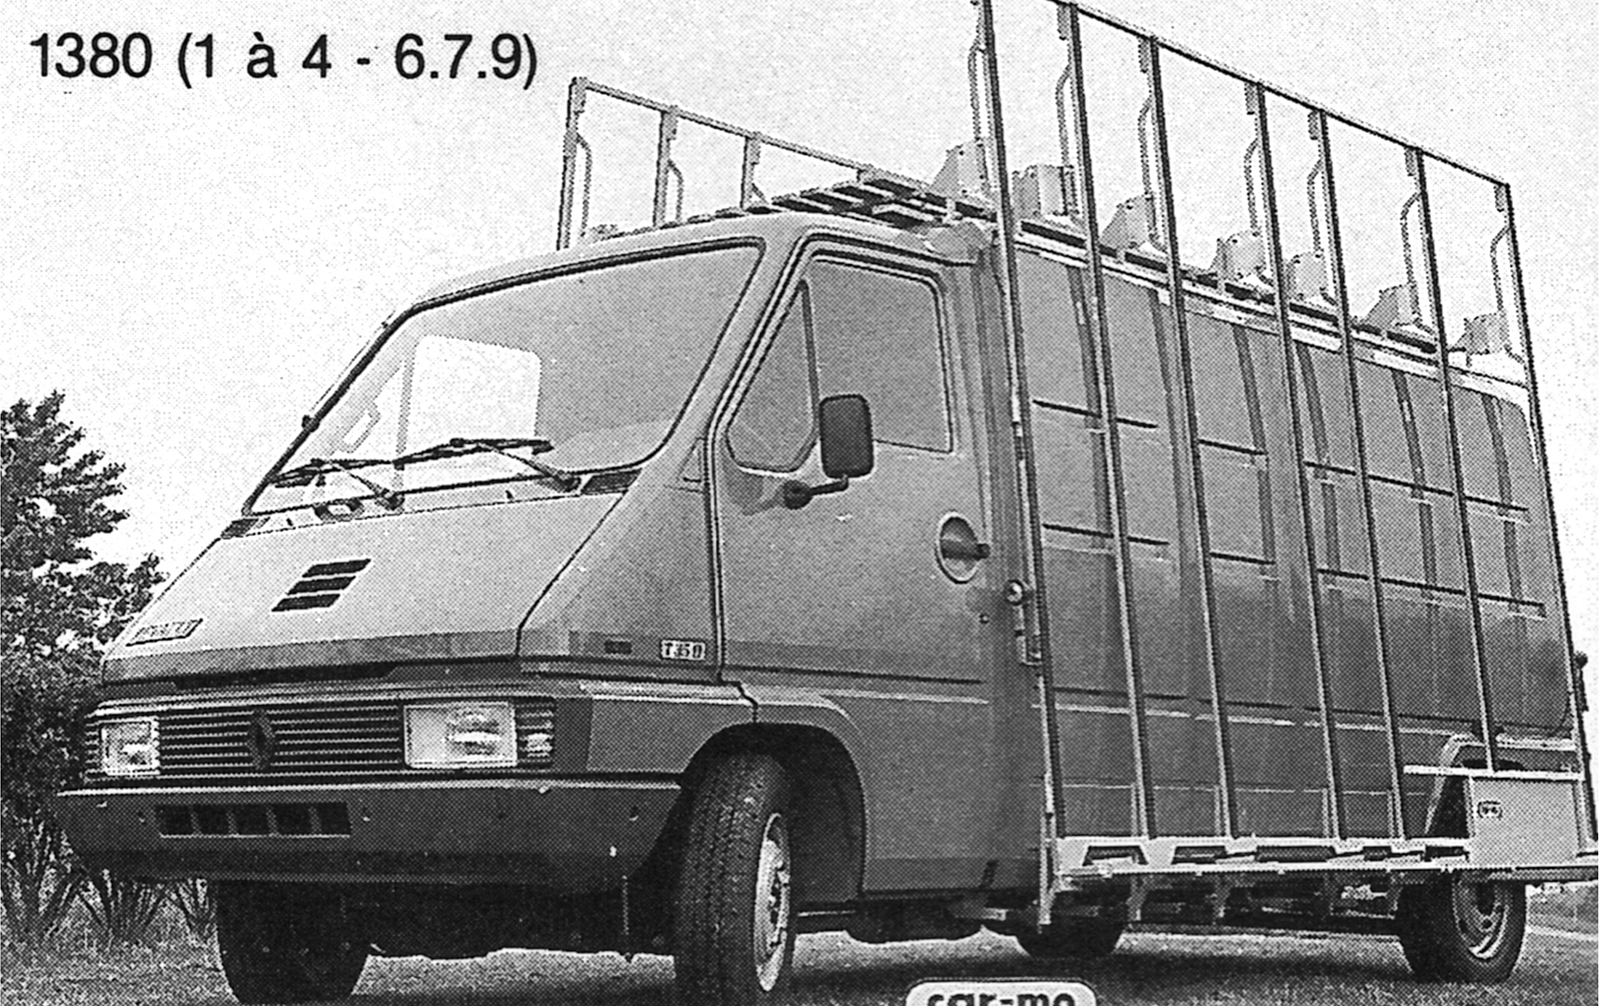 Renault Master I 1980-1997. Successeur de l'Estafette, le Renault Master de première génération se démarque des formes habituelles de la concurrence par son nouveau design, notamment au niveau de ses portes coulissantes